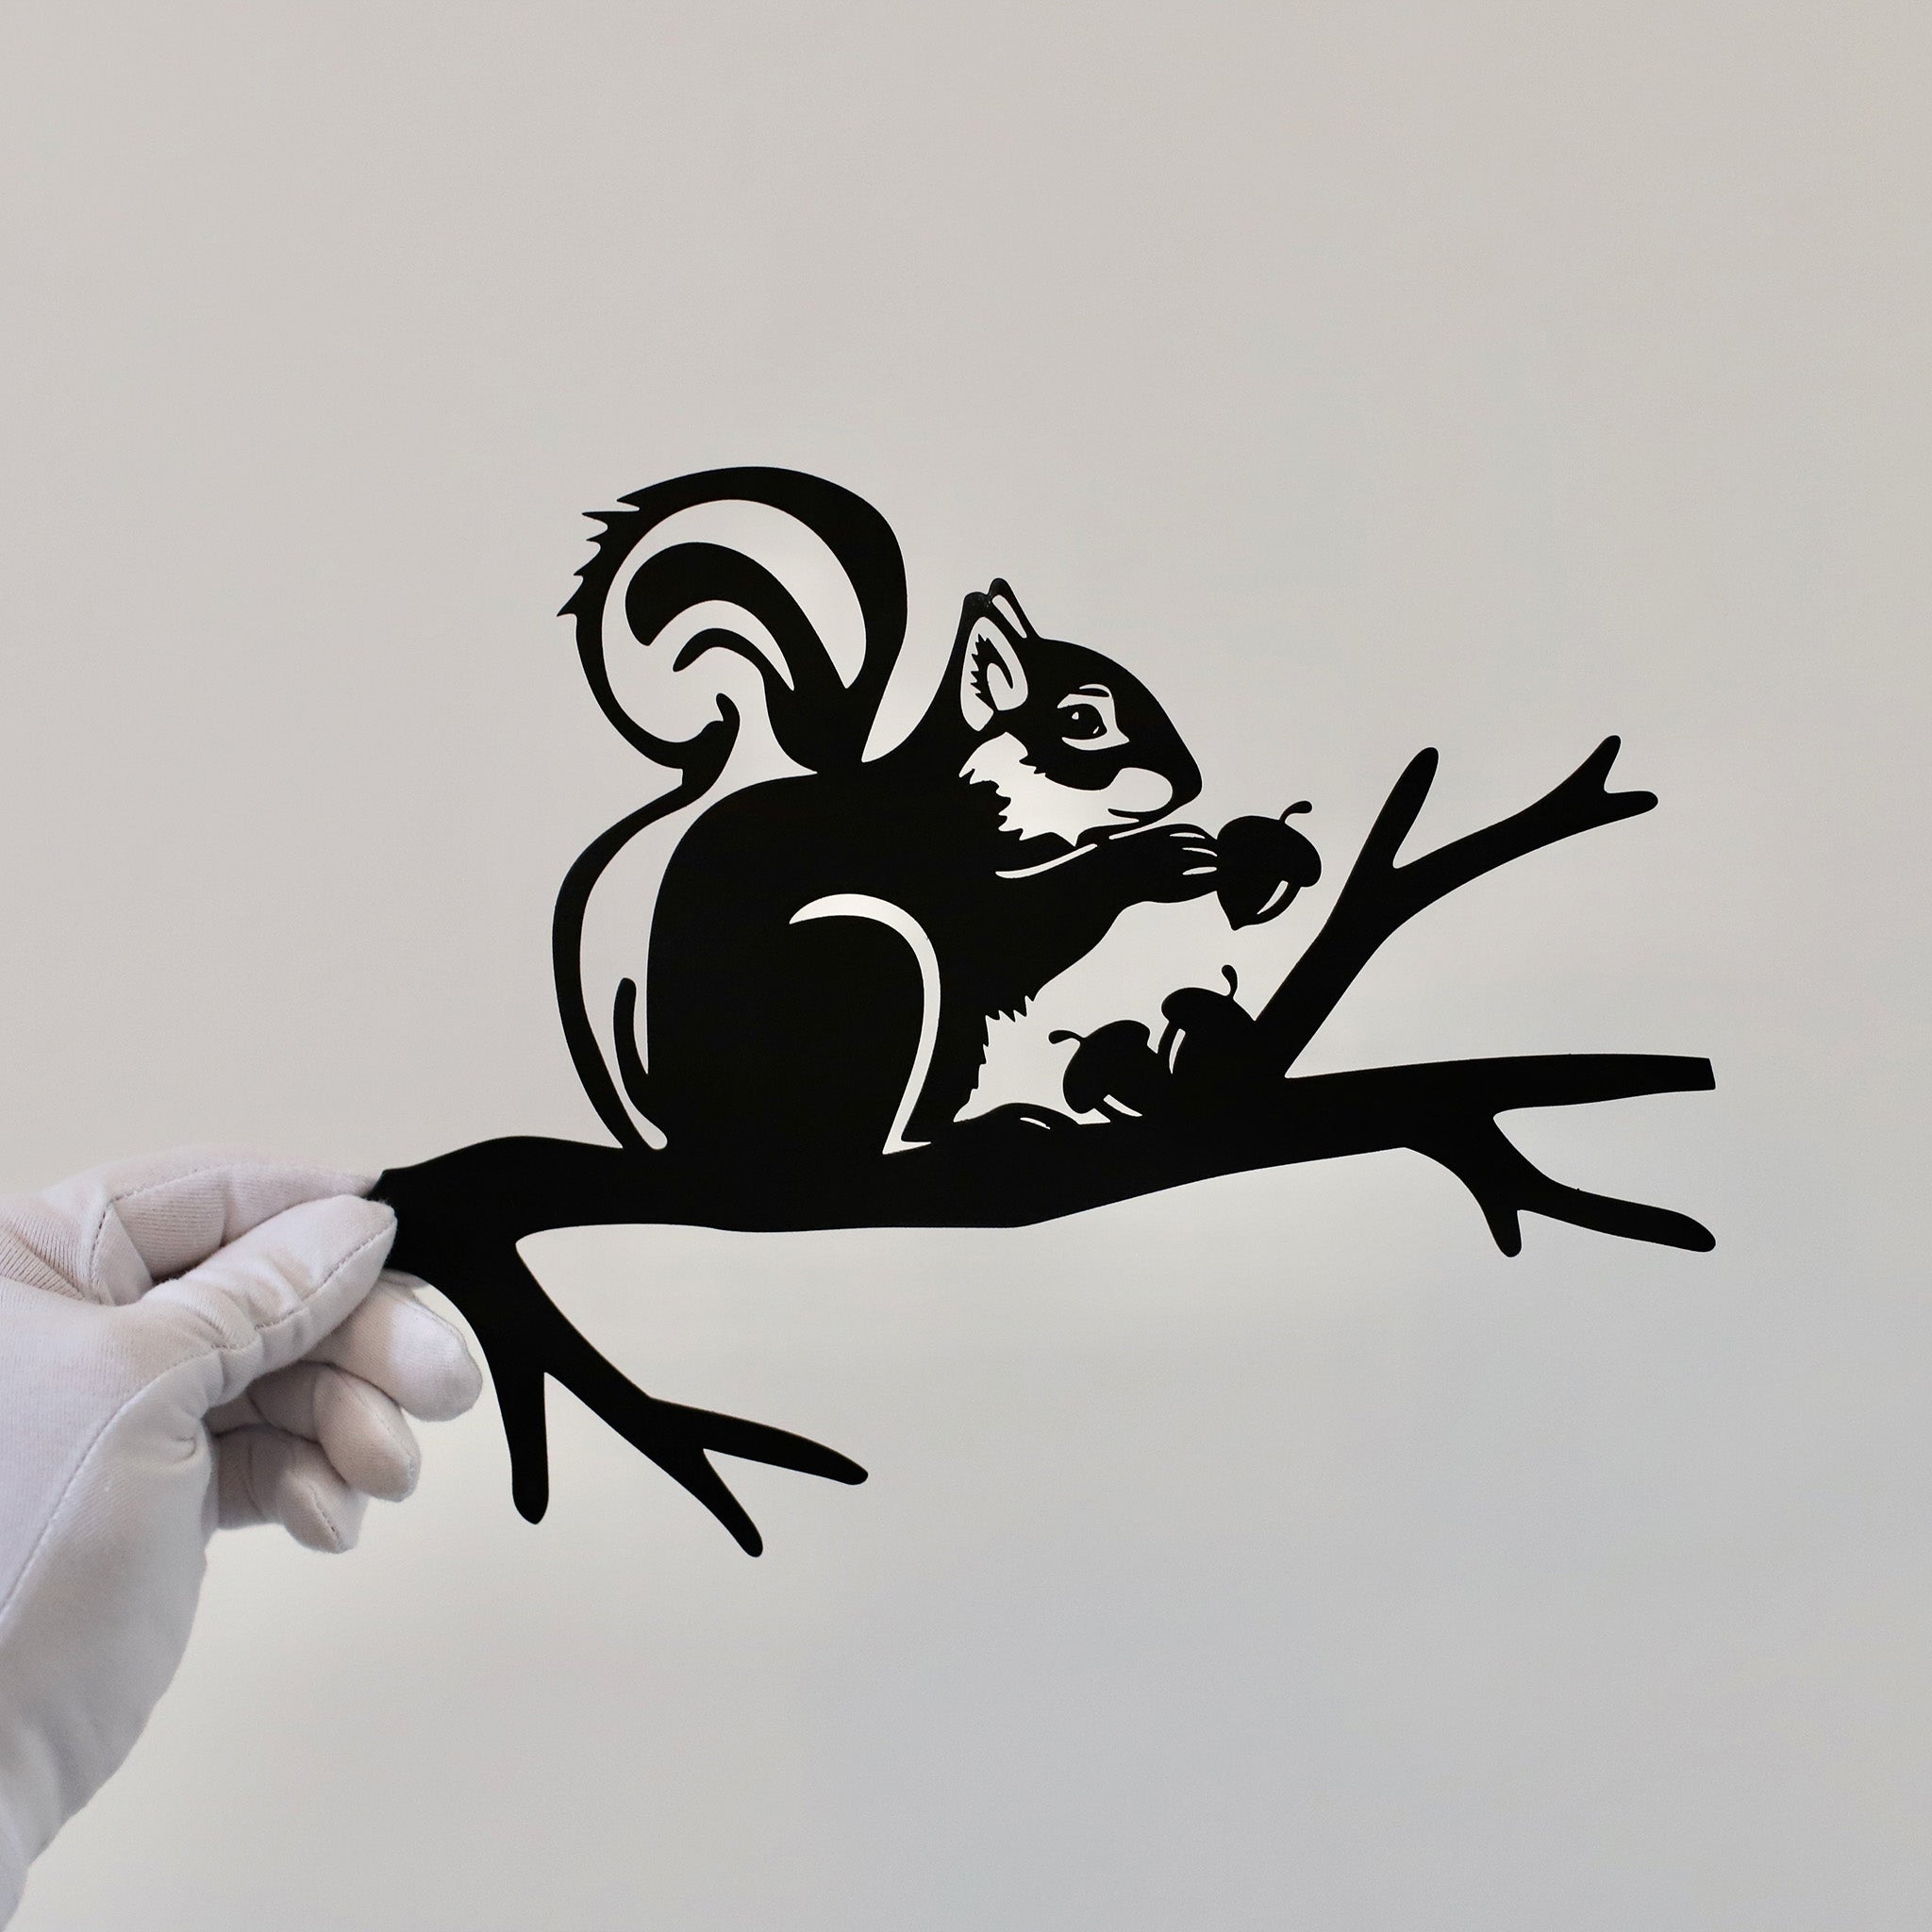 Plaque métallique Steelmonks,Corneille mangeuse. Décoration murale en forme d'arbre disponible en plusieurs tailles et couleurs.